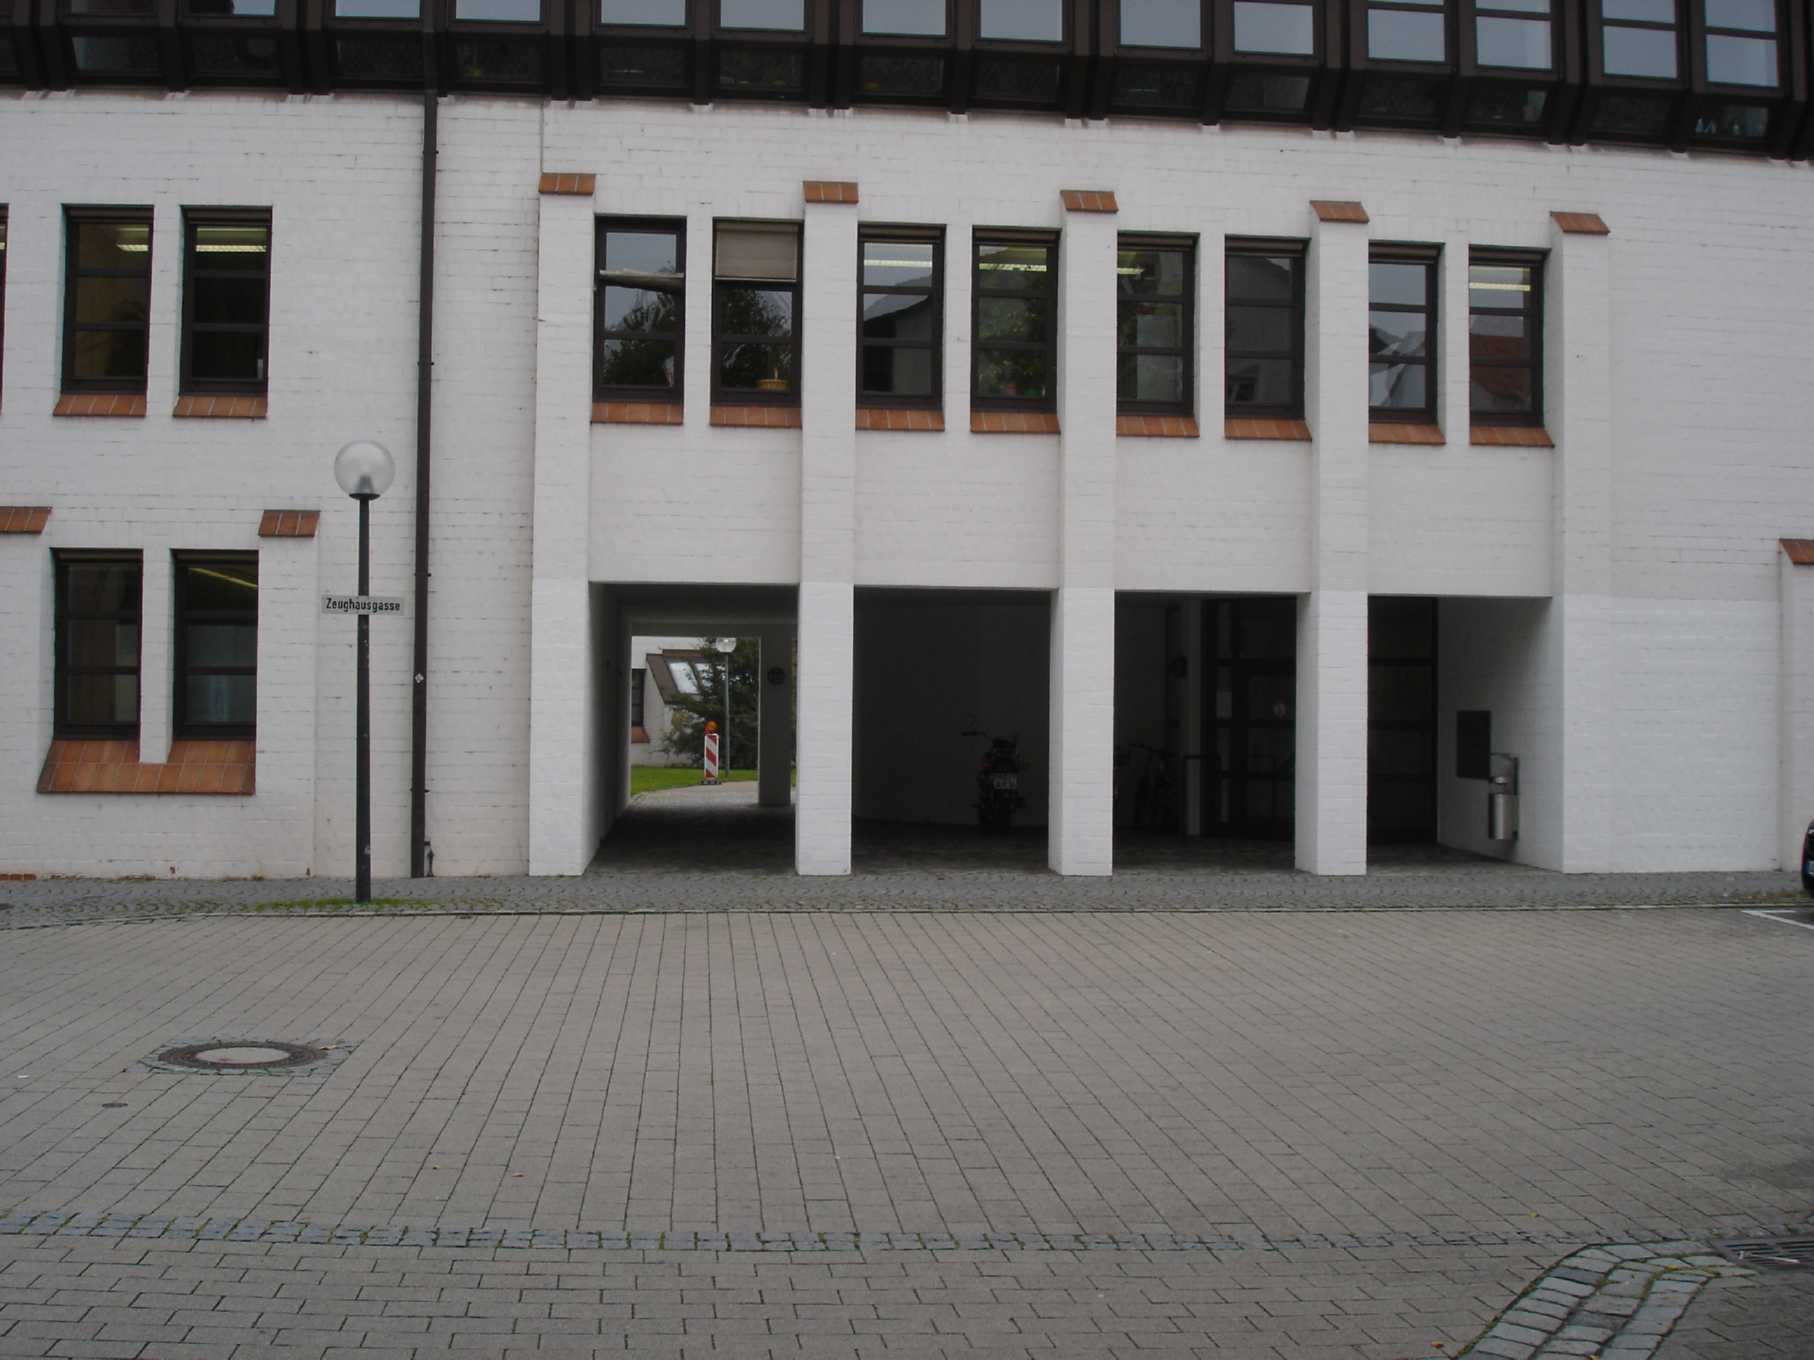 Arkaden: Zugang und Zufahrt zum Innenhof des Amtsgerichts Ulm